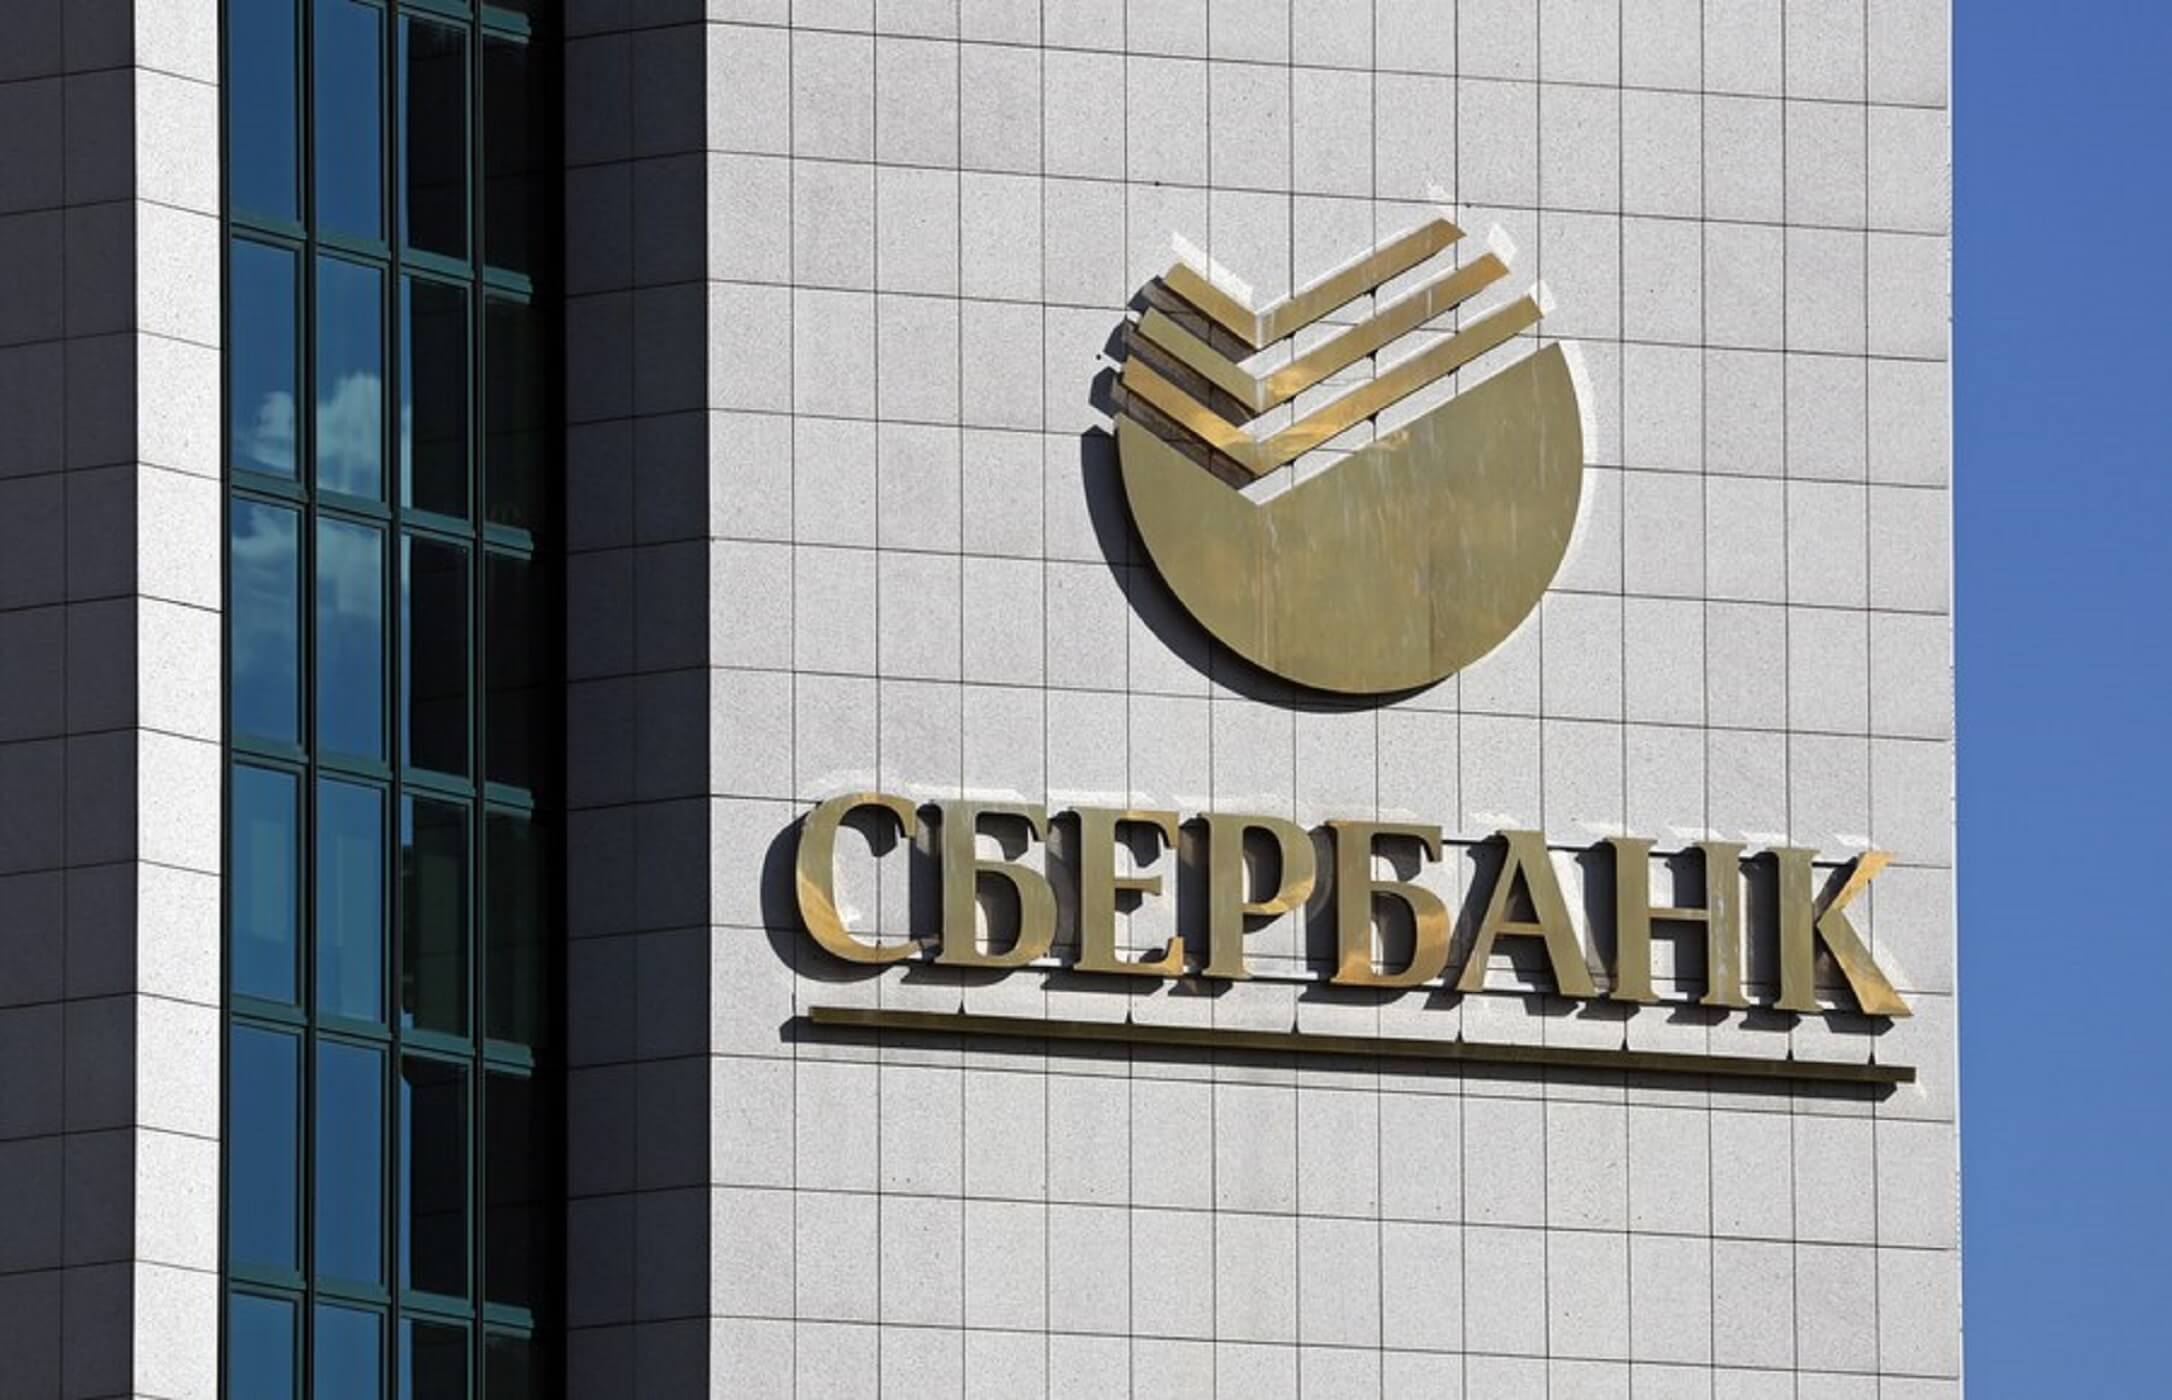 Ο πρόεδρος της Sberbaνk υπερασπίζεται τον Αμερικανό επενδυτή που κατηγορείται για υπεξαίρεση